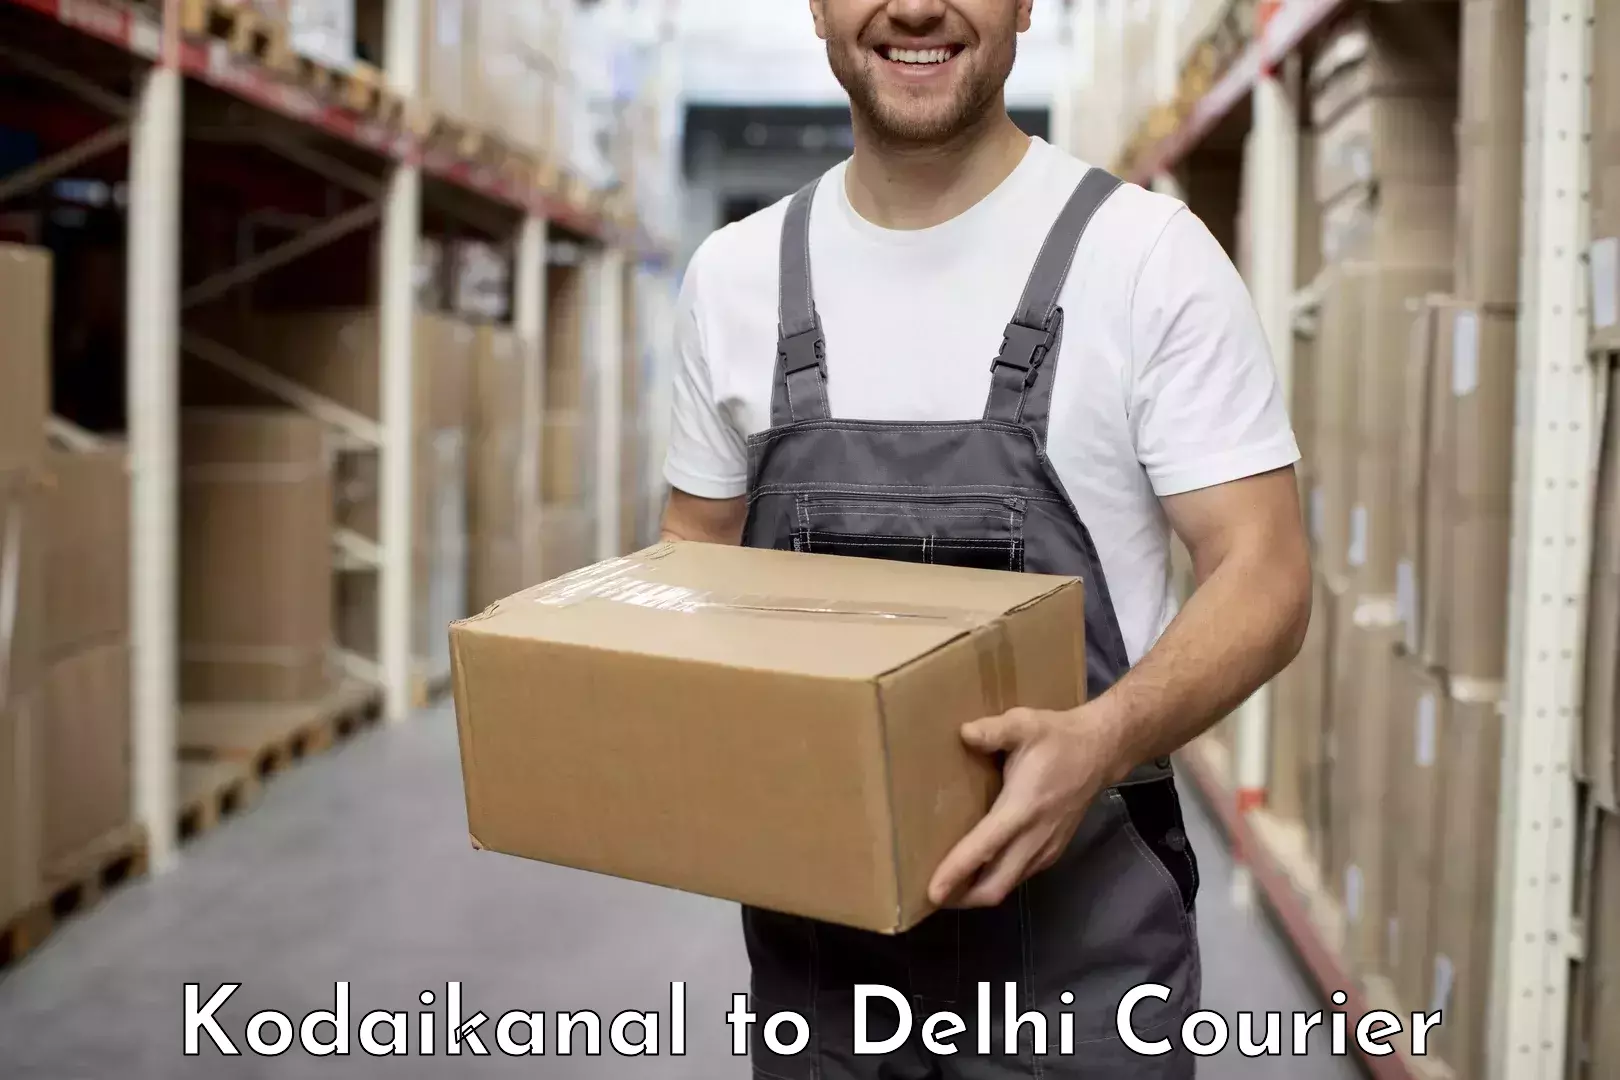 High-capacity parcel service Kodaikanal to University of Delhi